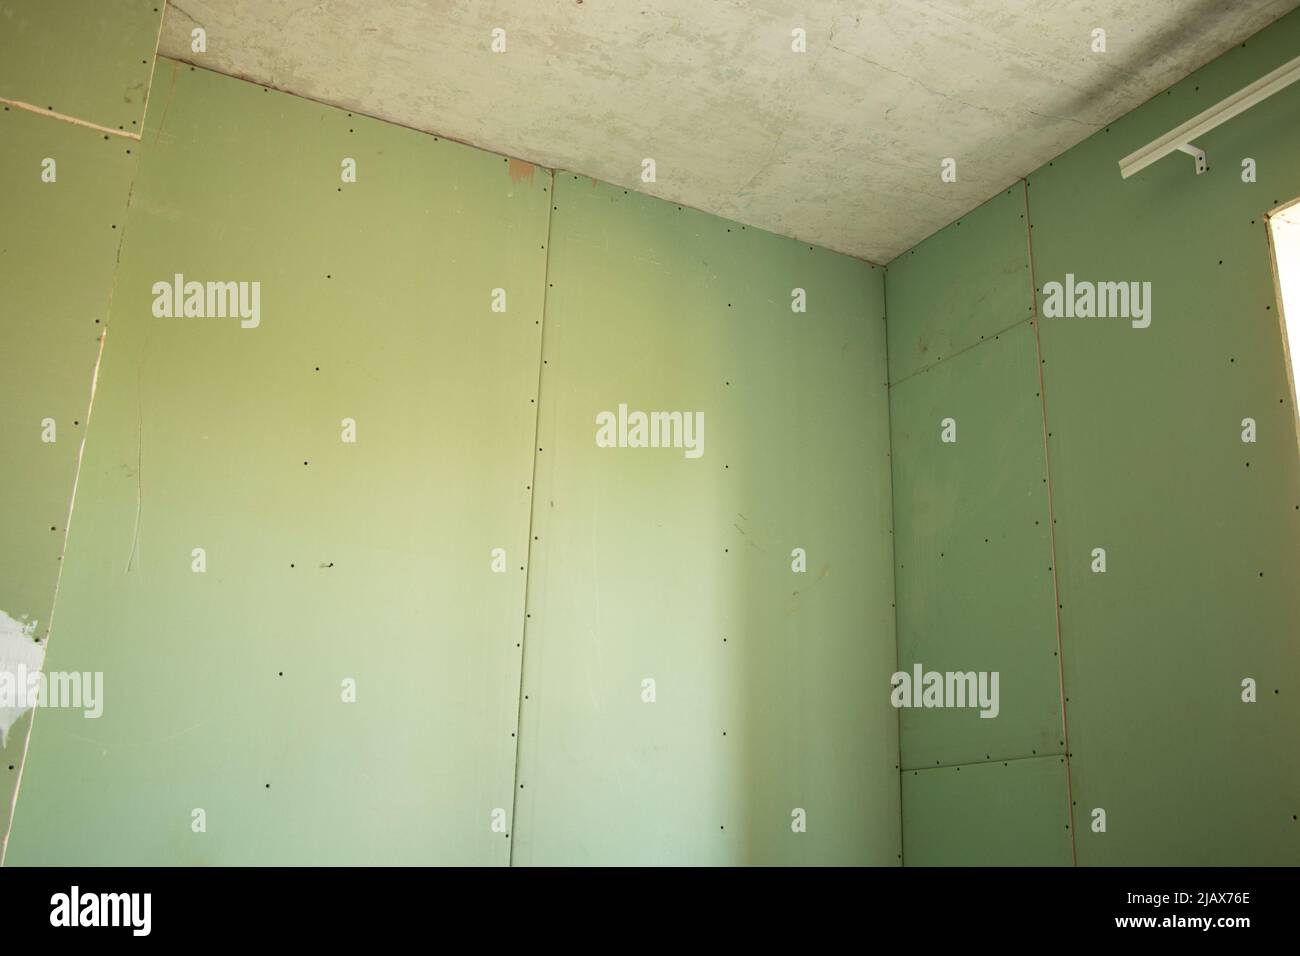 mur de placoplâtre résistant à l'humidité dans la chambre, réparation des murs de l'appartement, placoplâtre Banque D'Images